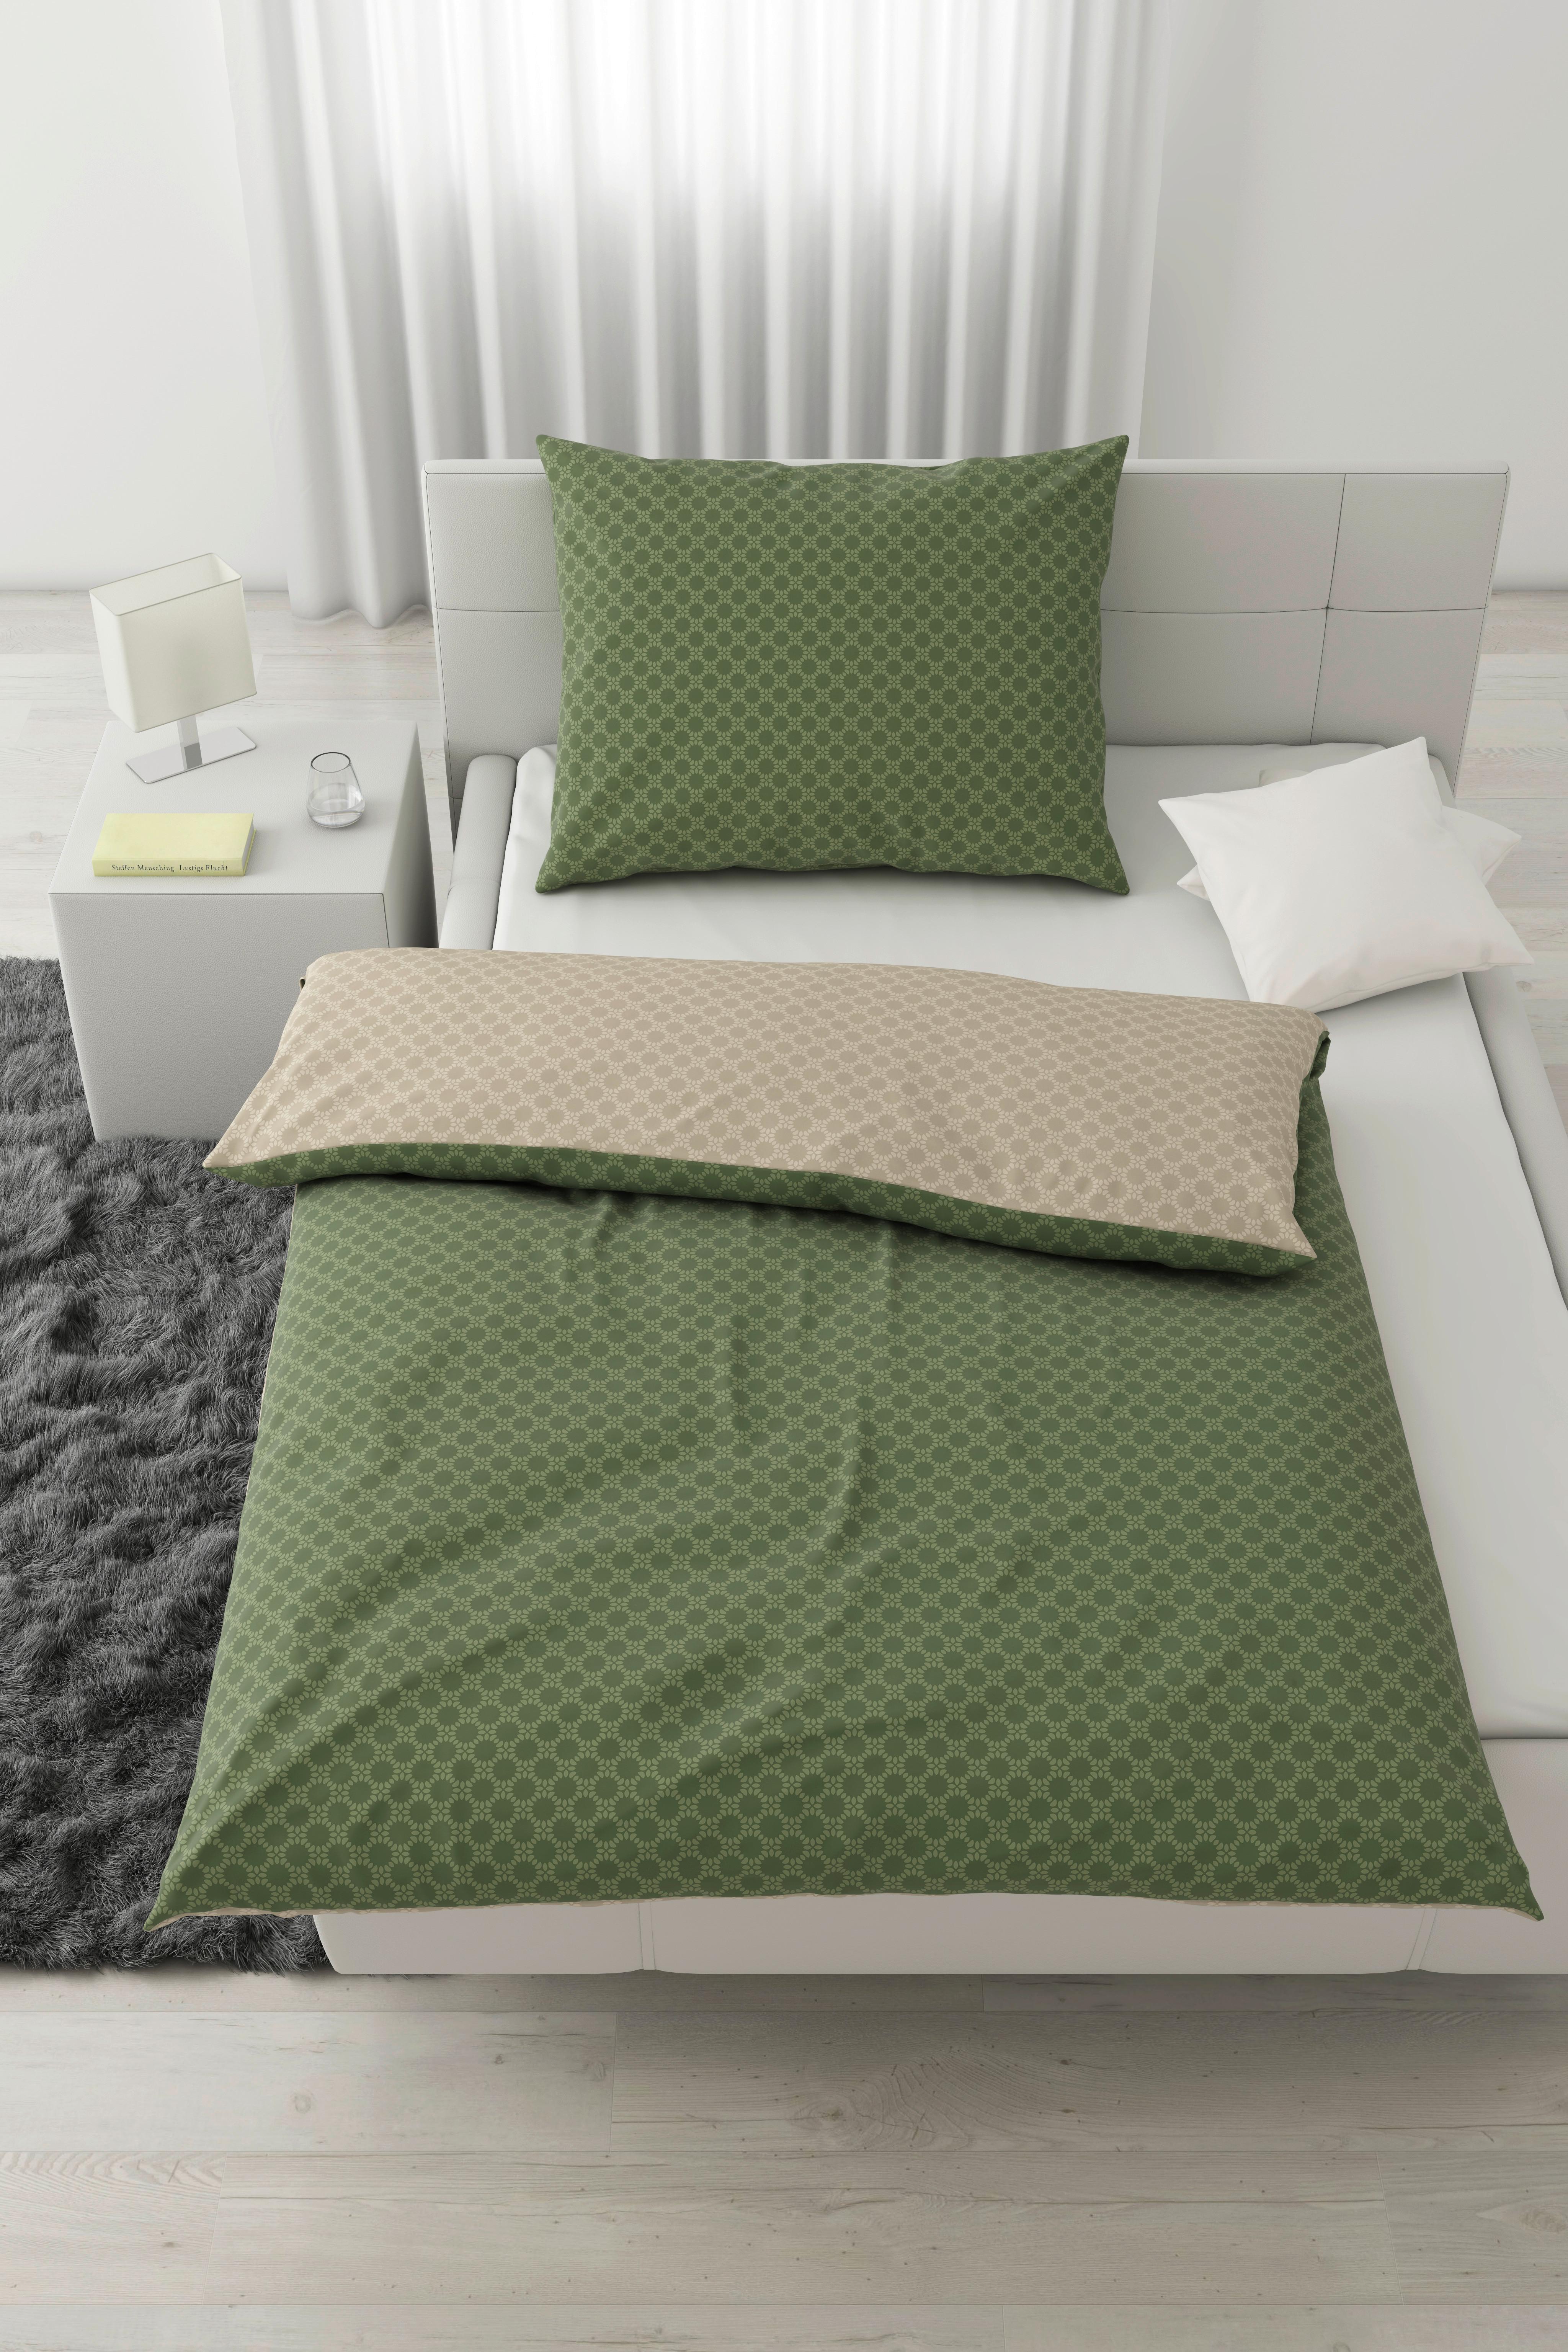 Povlečení Mici, 140/200cm - zelená/béžová, Konvenční, textil (140/200cm) - Modern Living